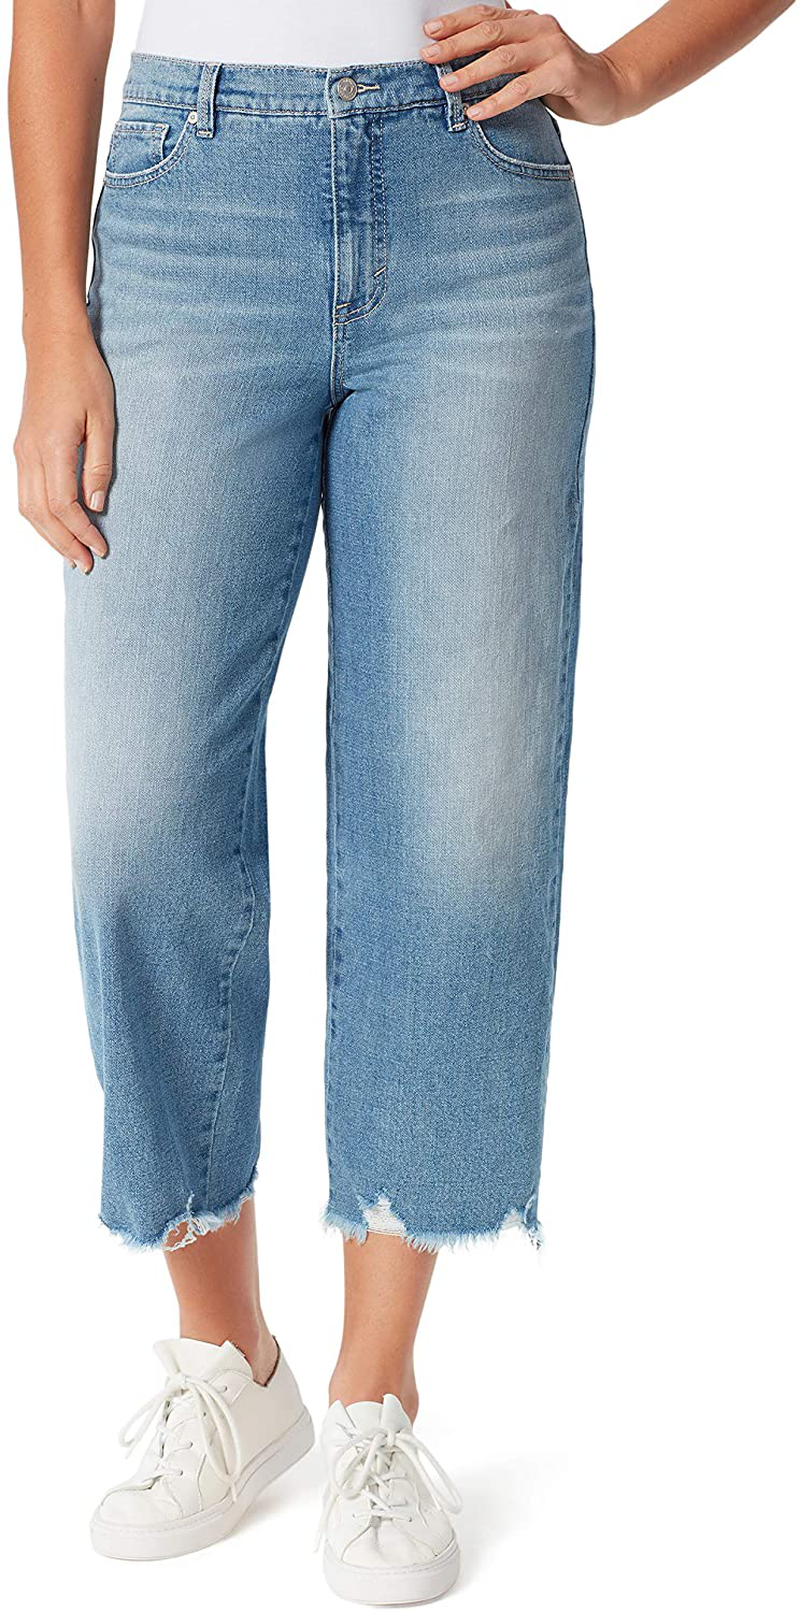 Gloria Vanderbilt Women's Amanda Wide Leg Crop Length Jean